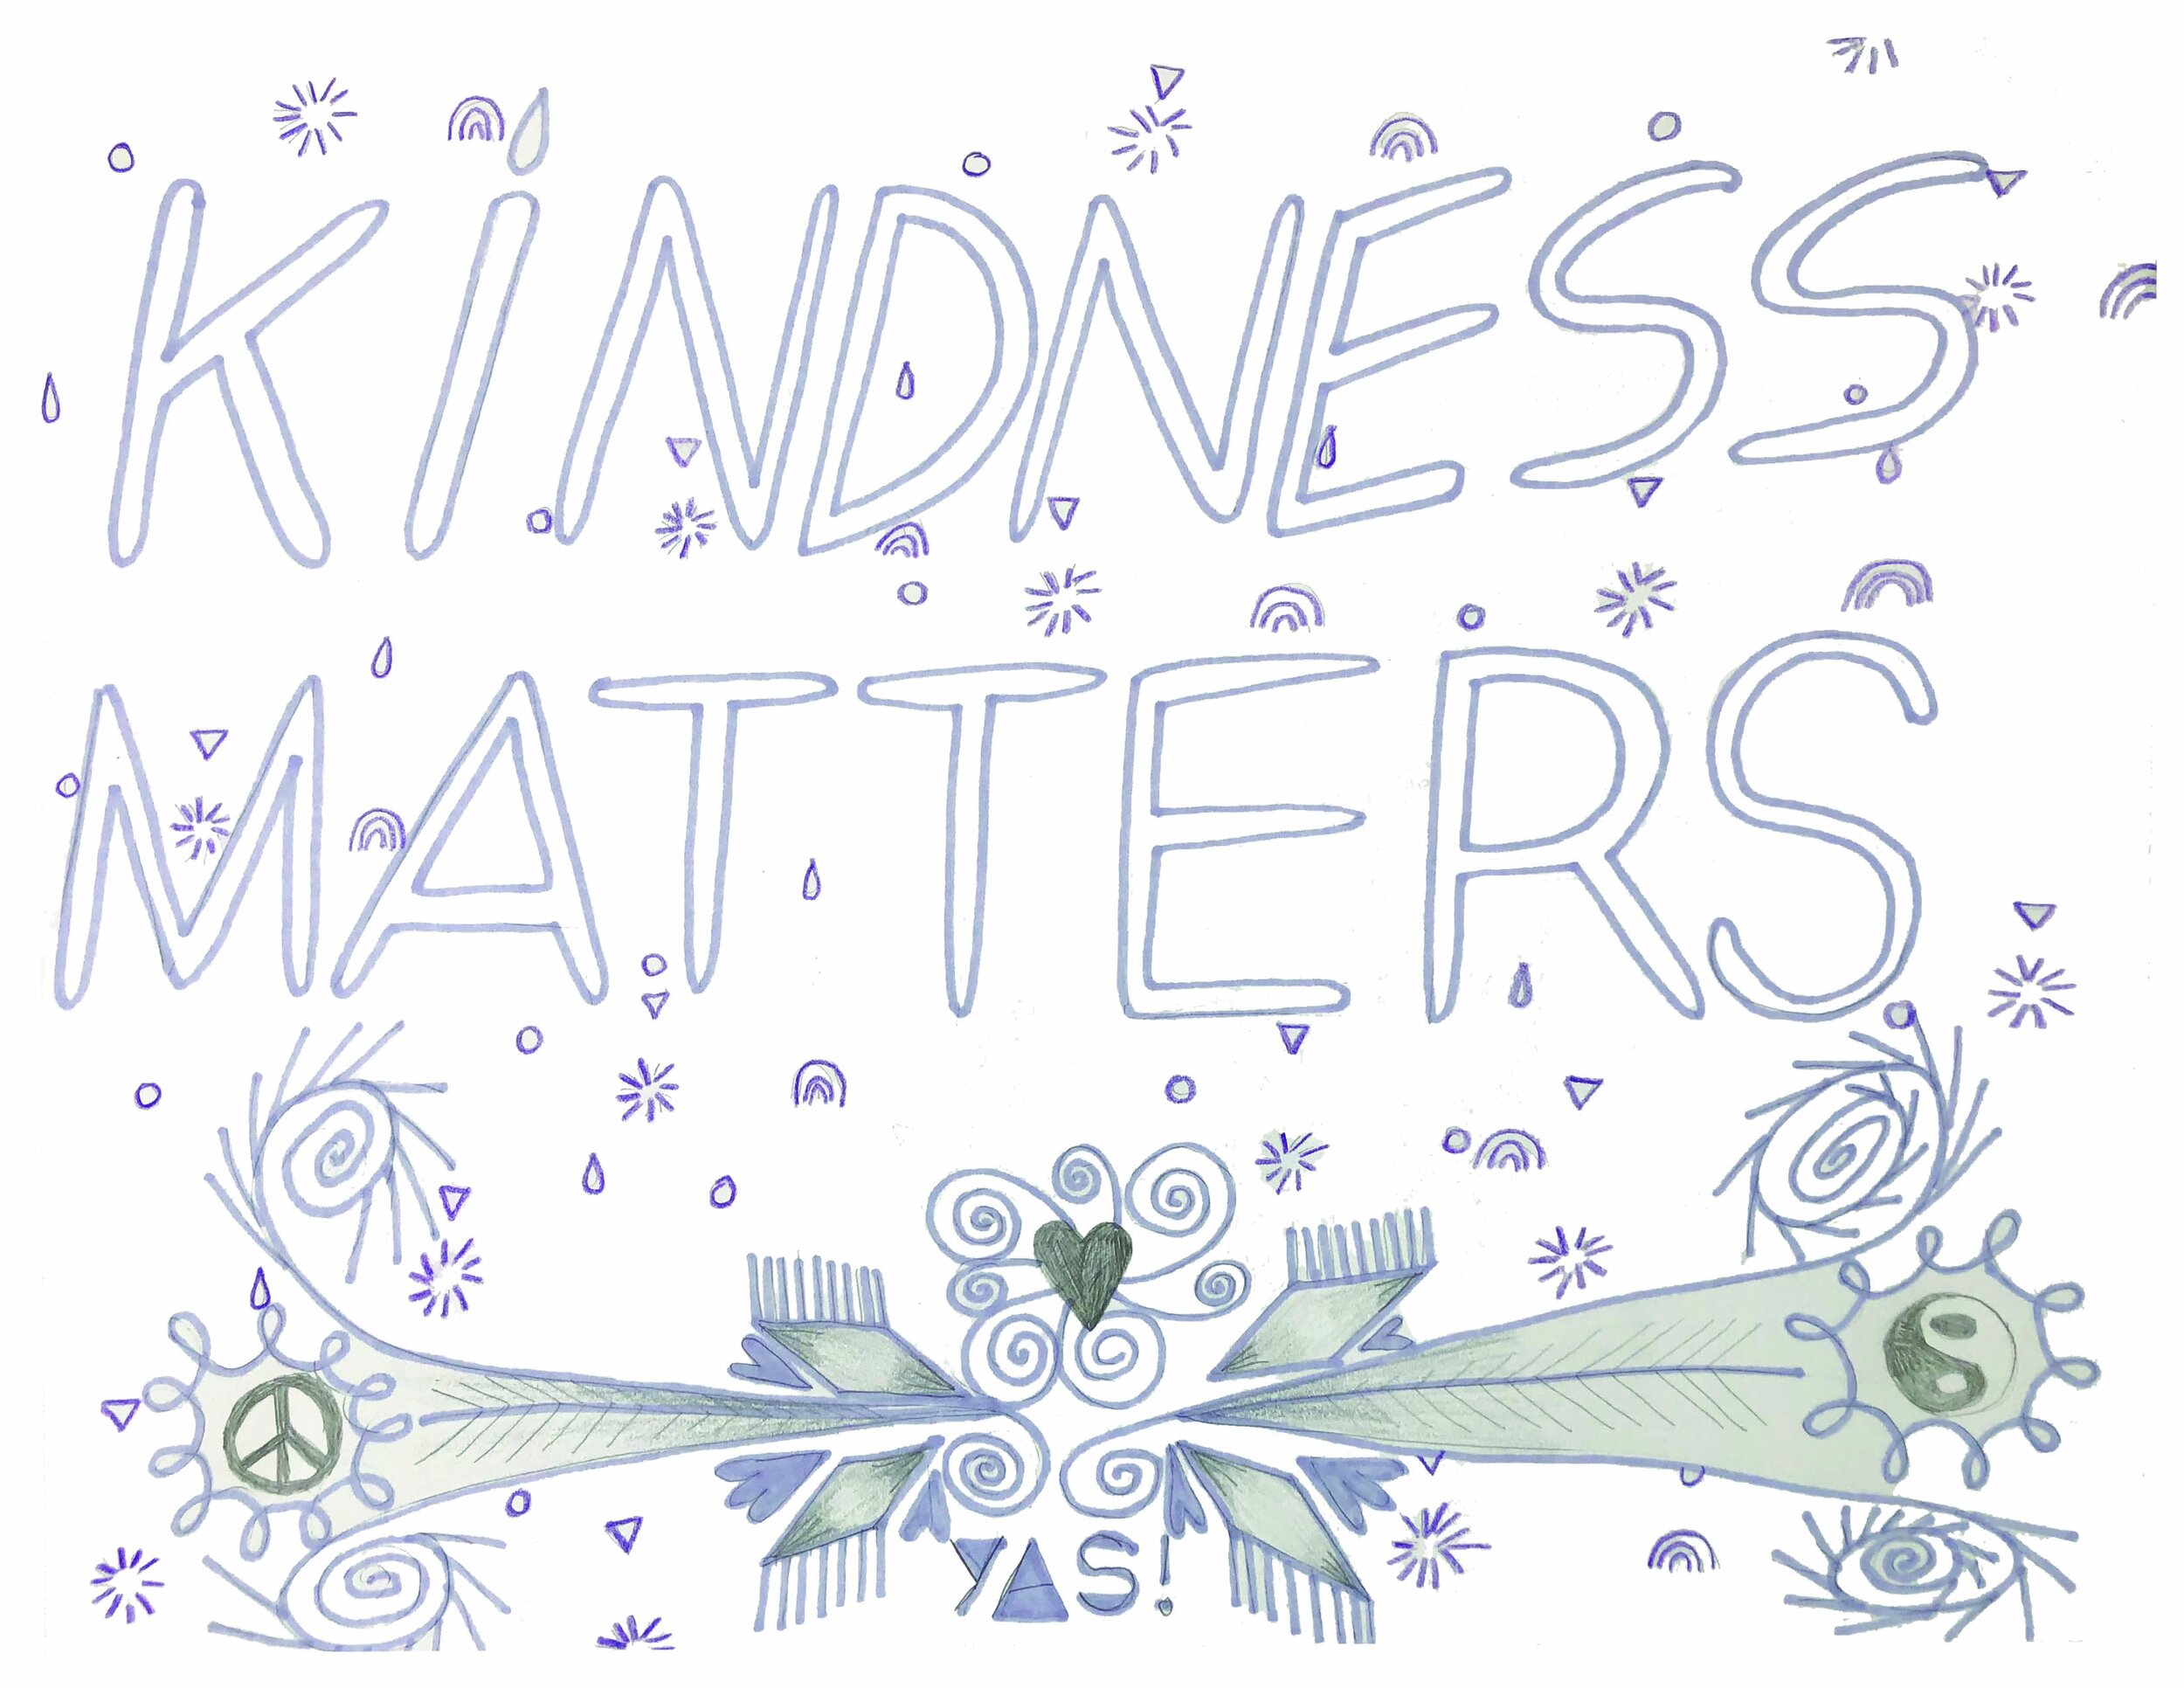 KindnessMatters_small.jpg